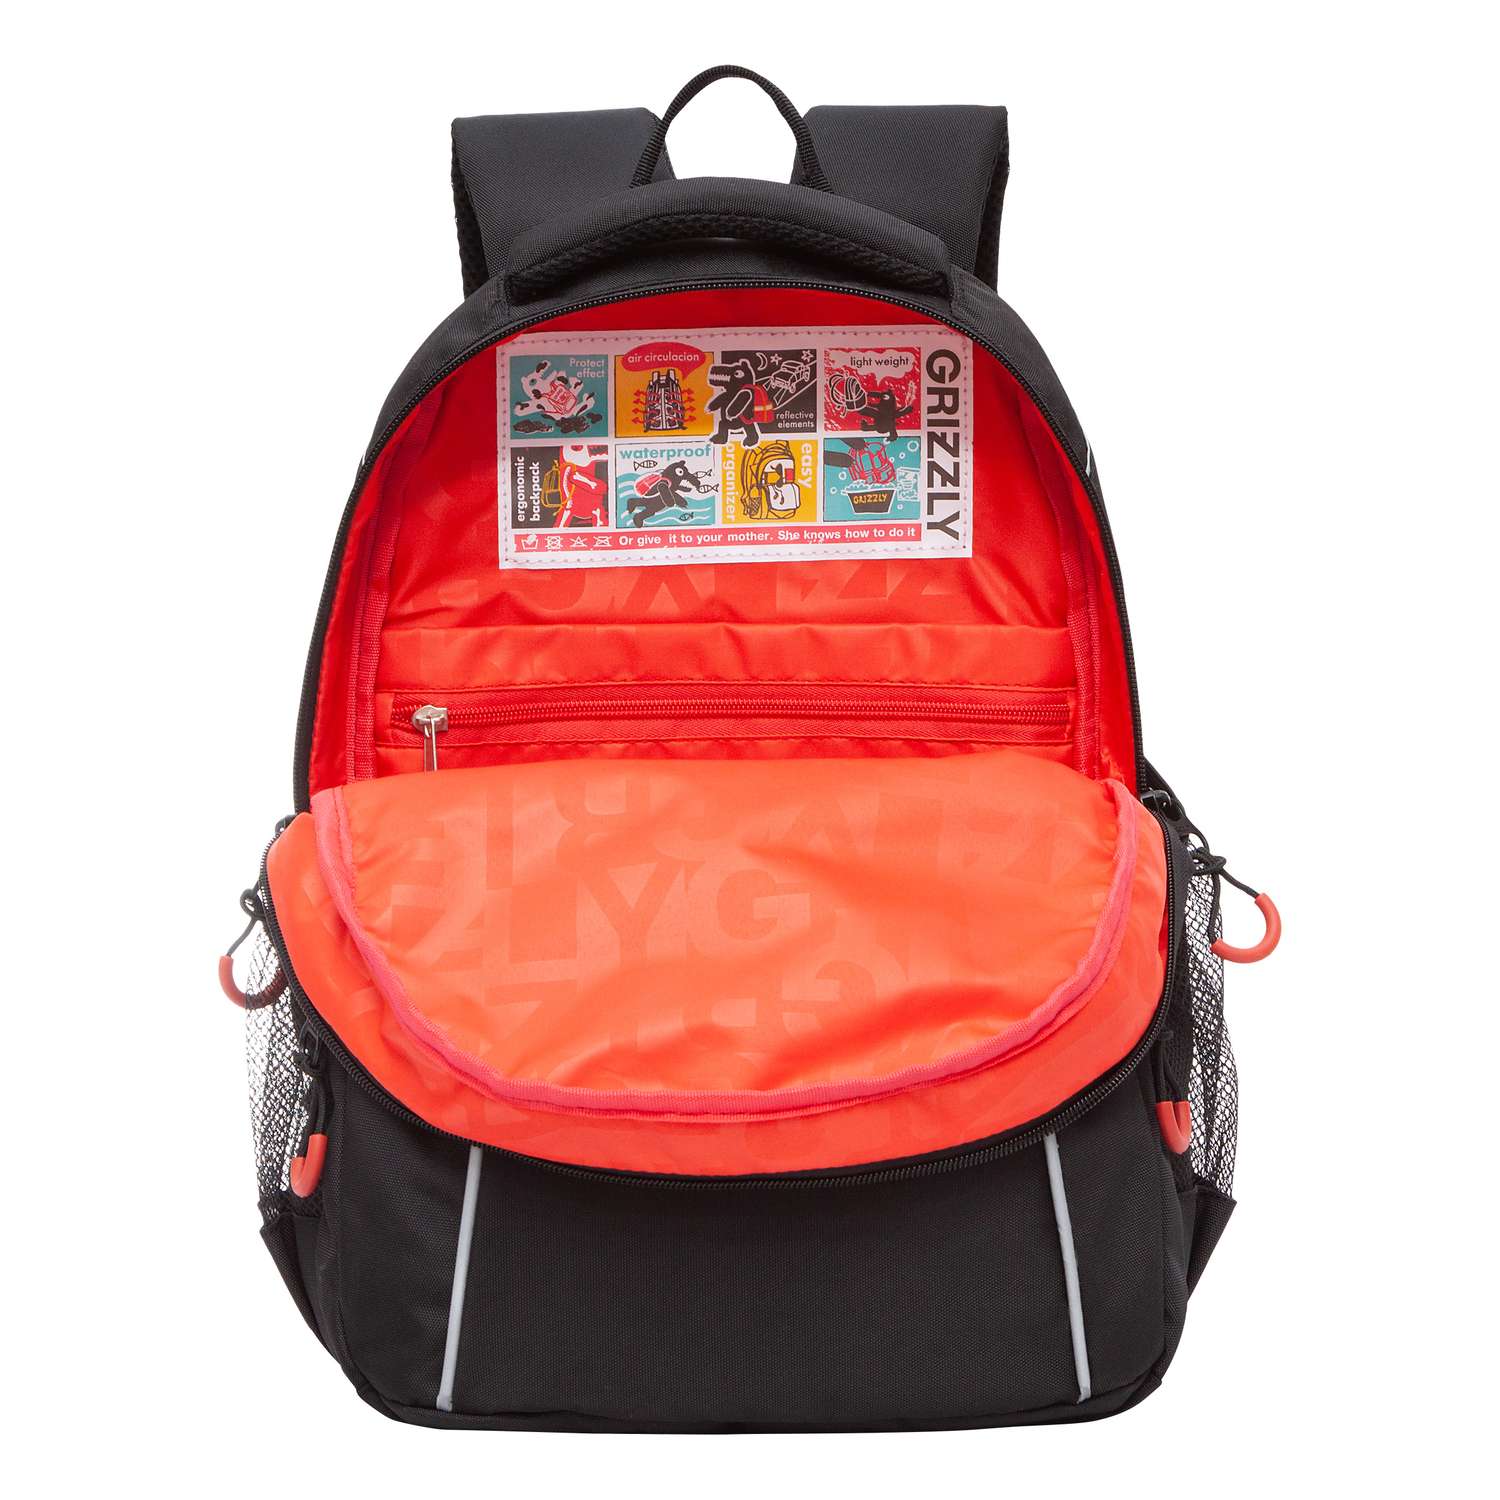 Рюкзак школьный Grizzly Черный-Красный RB-259-3/1 - фото 4